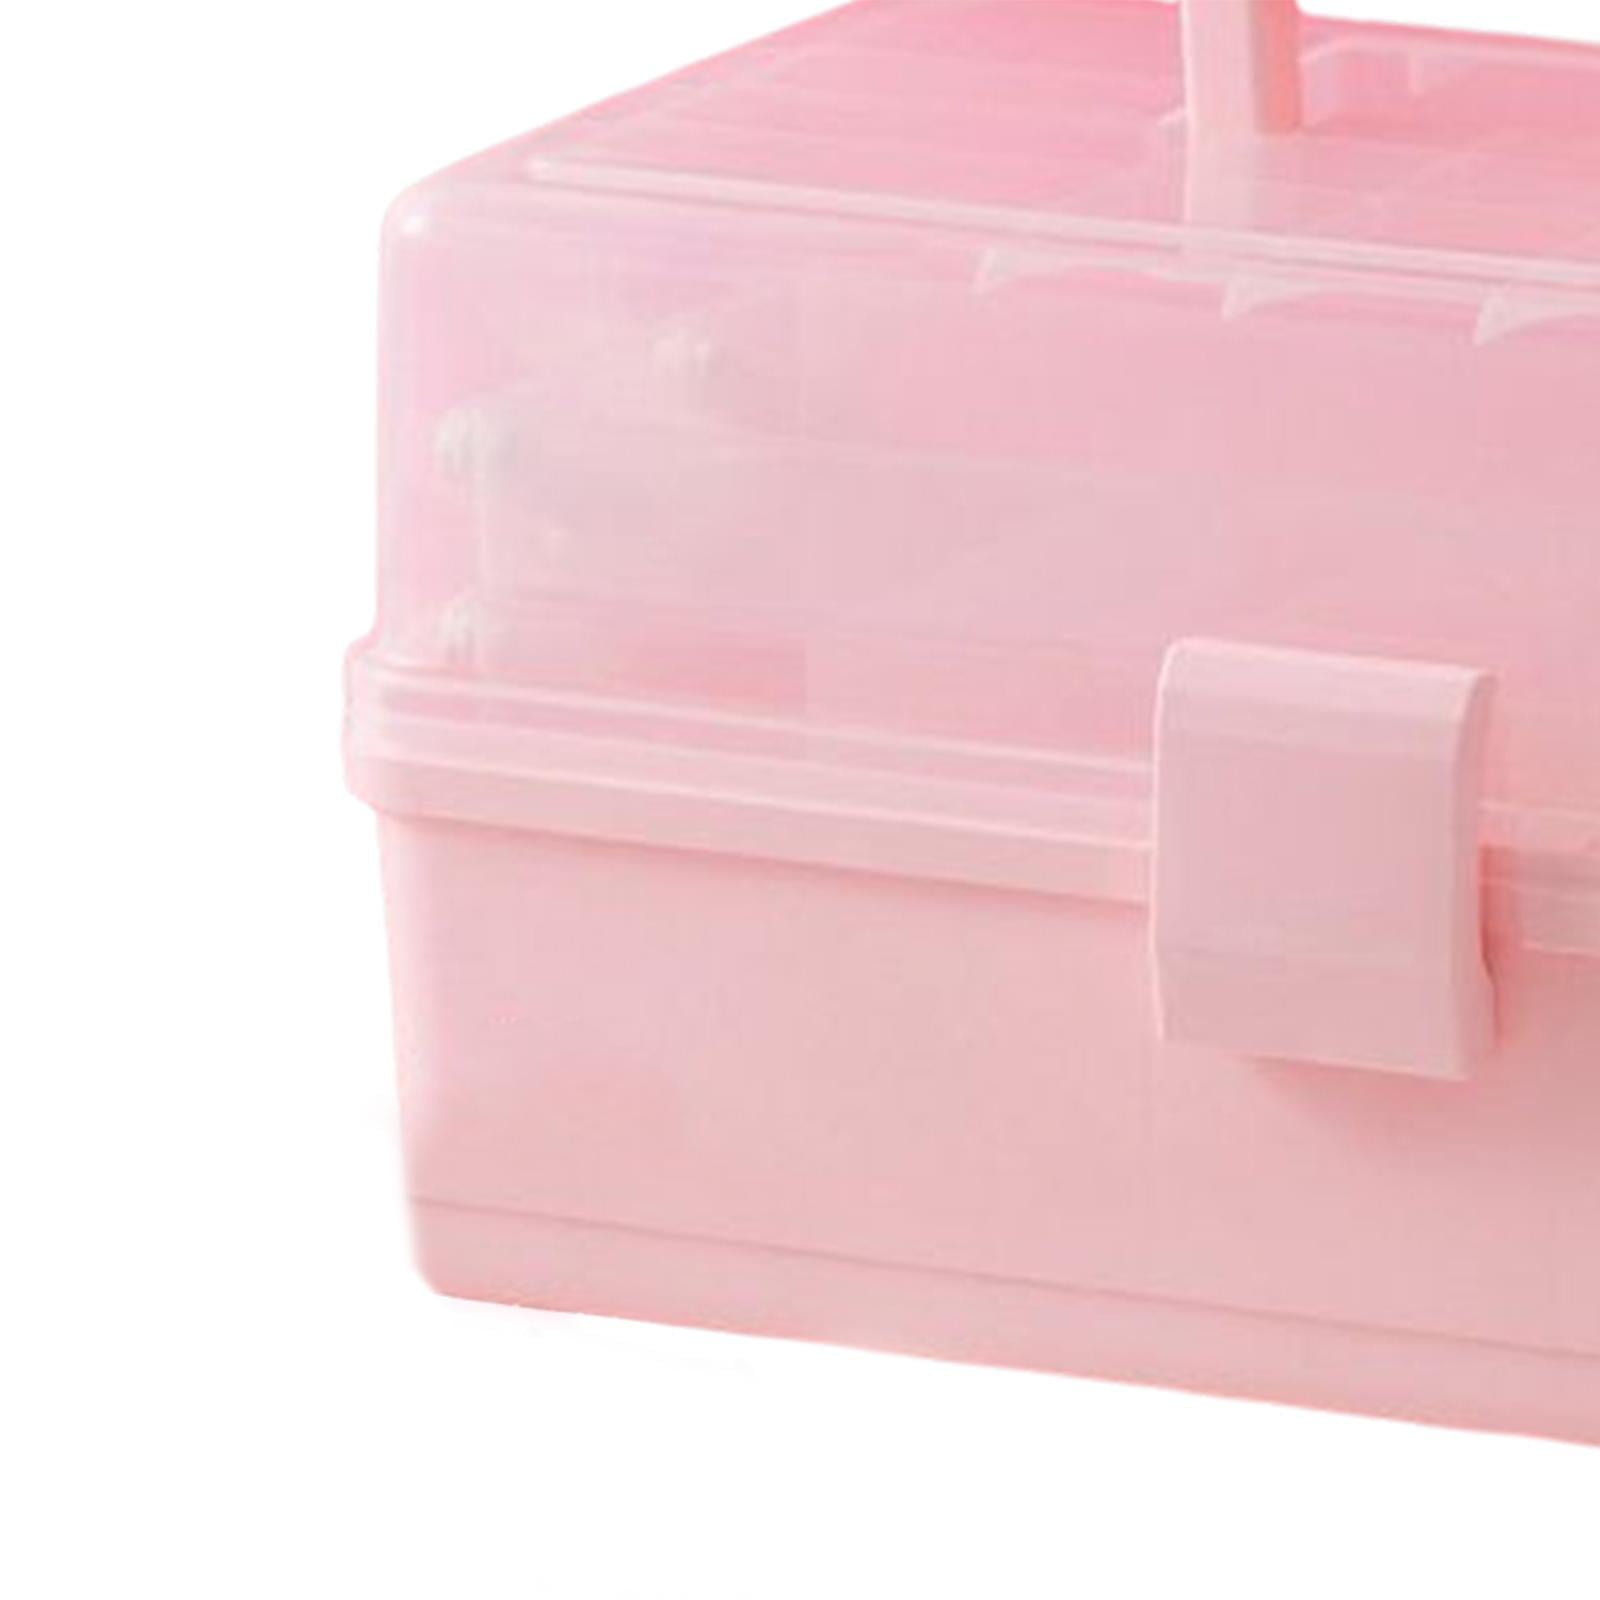 1Set Children Hair Accessories Organizer Multi-Tier Hairpin Hair Tie Storage Container Pink, Size: 28X15.5X16.5CM